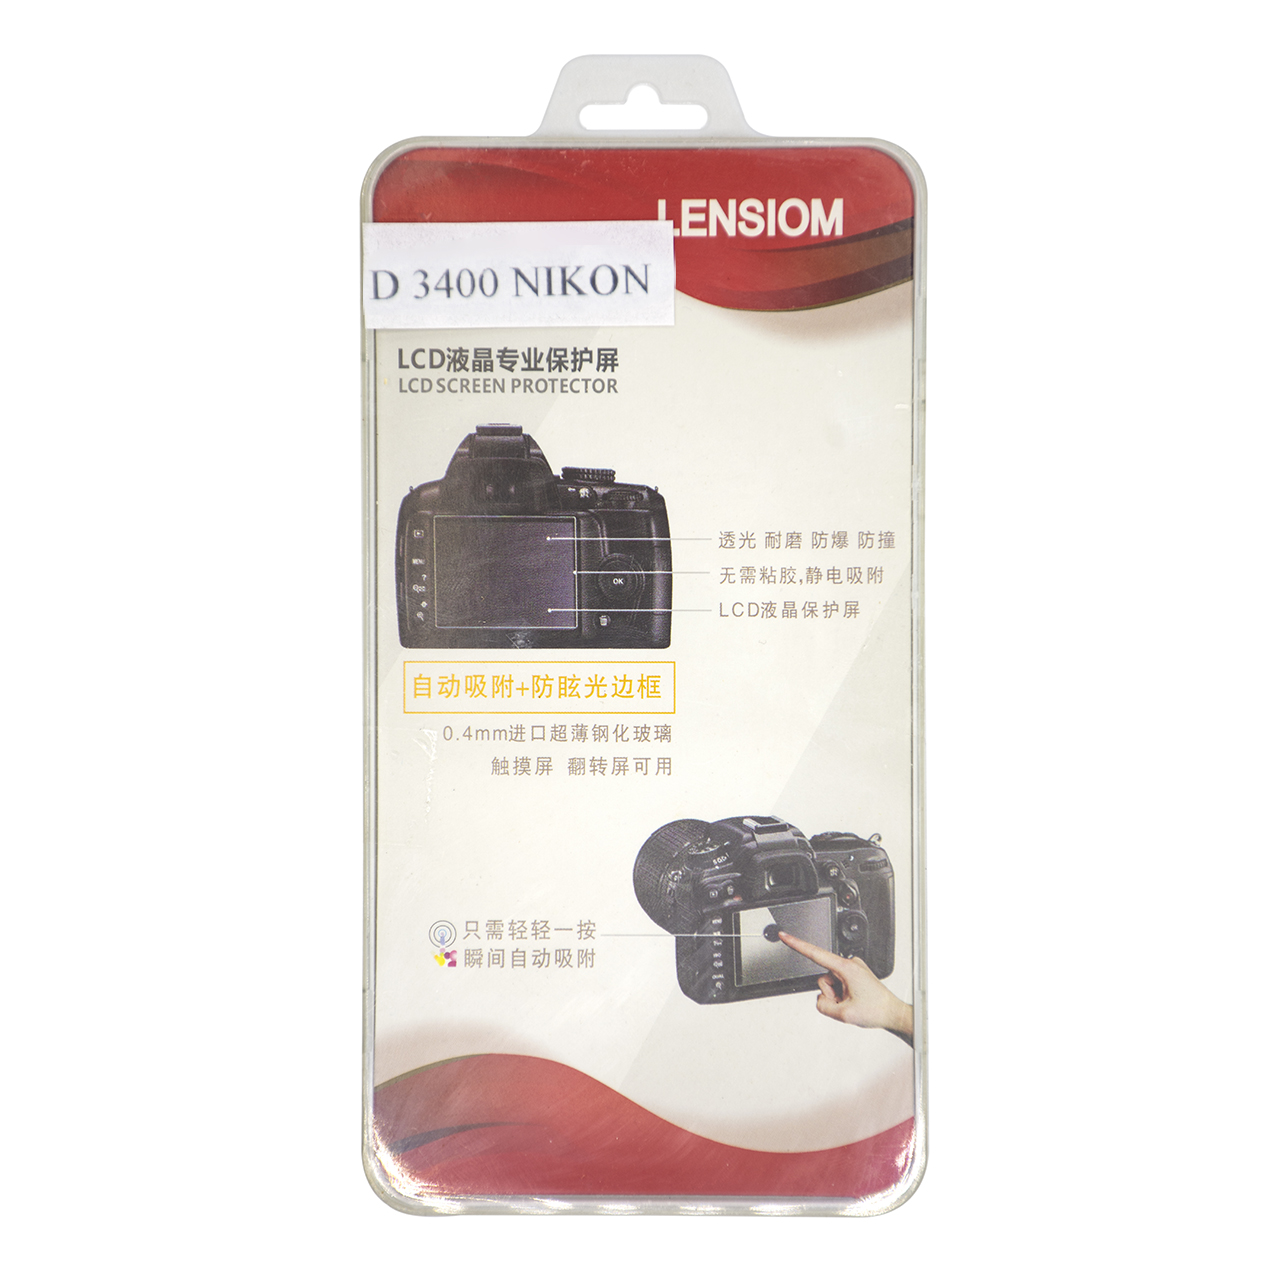 محافظ صفحه نمایش دوربین لنزیوم مدل LD3400 مناسب برای نیکون D3400